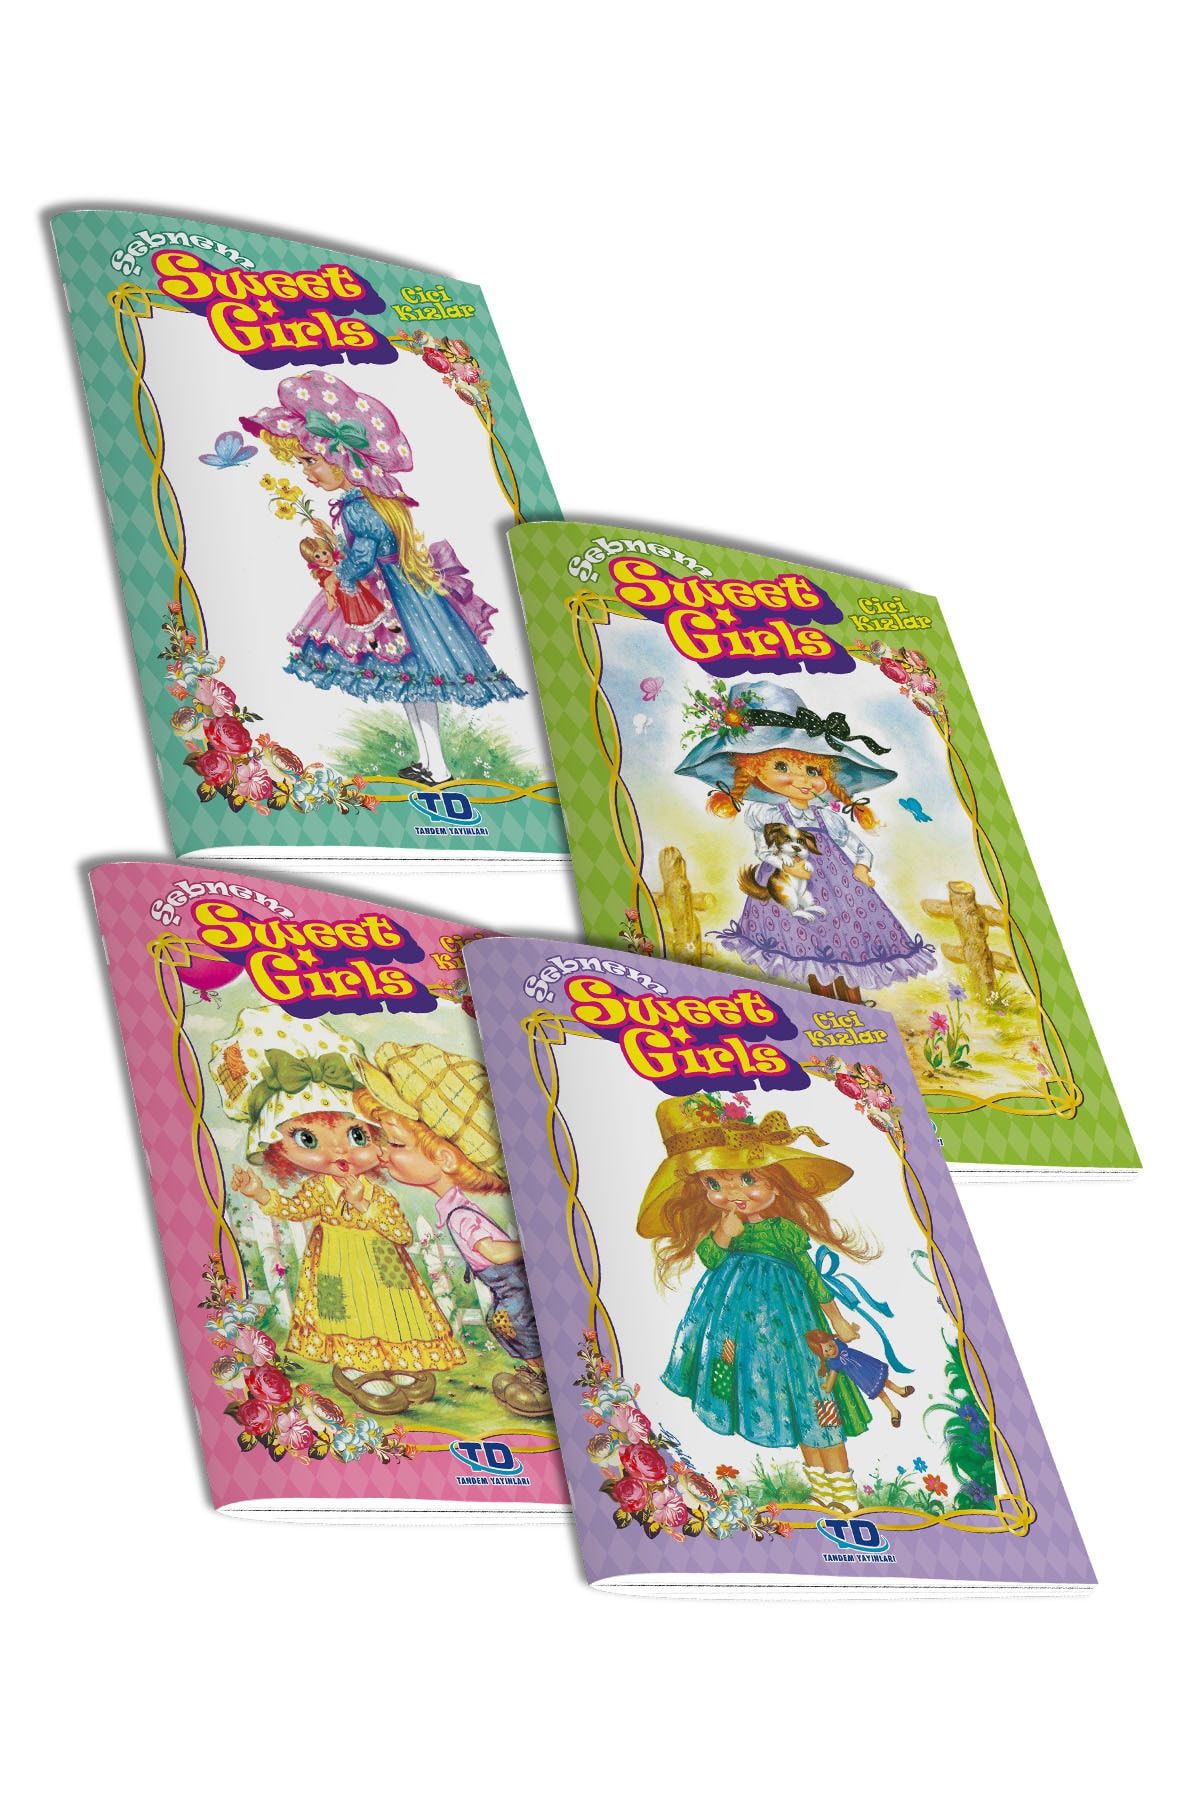 Tandem Yayınları Şebnem Cici Kızlar (Sweet Girls) 4 Lü Etkinlik Kitabı Seri 1